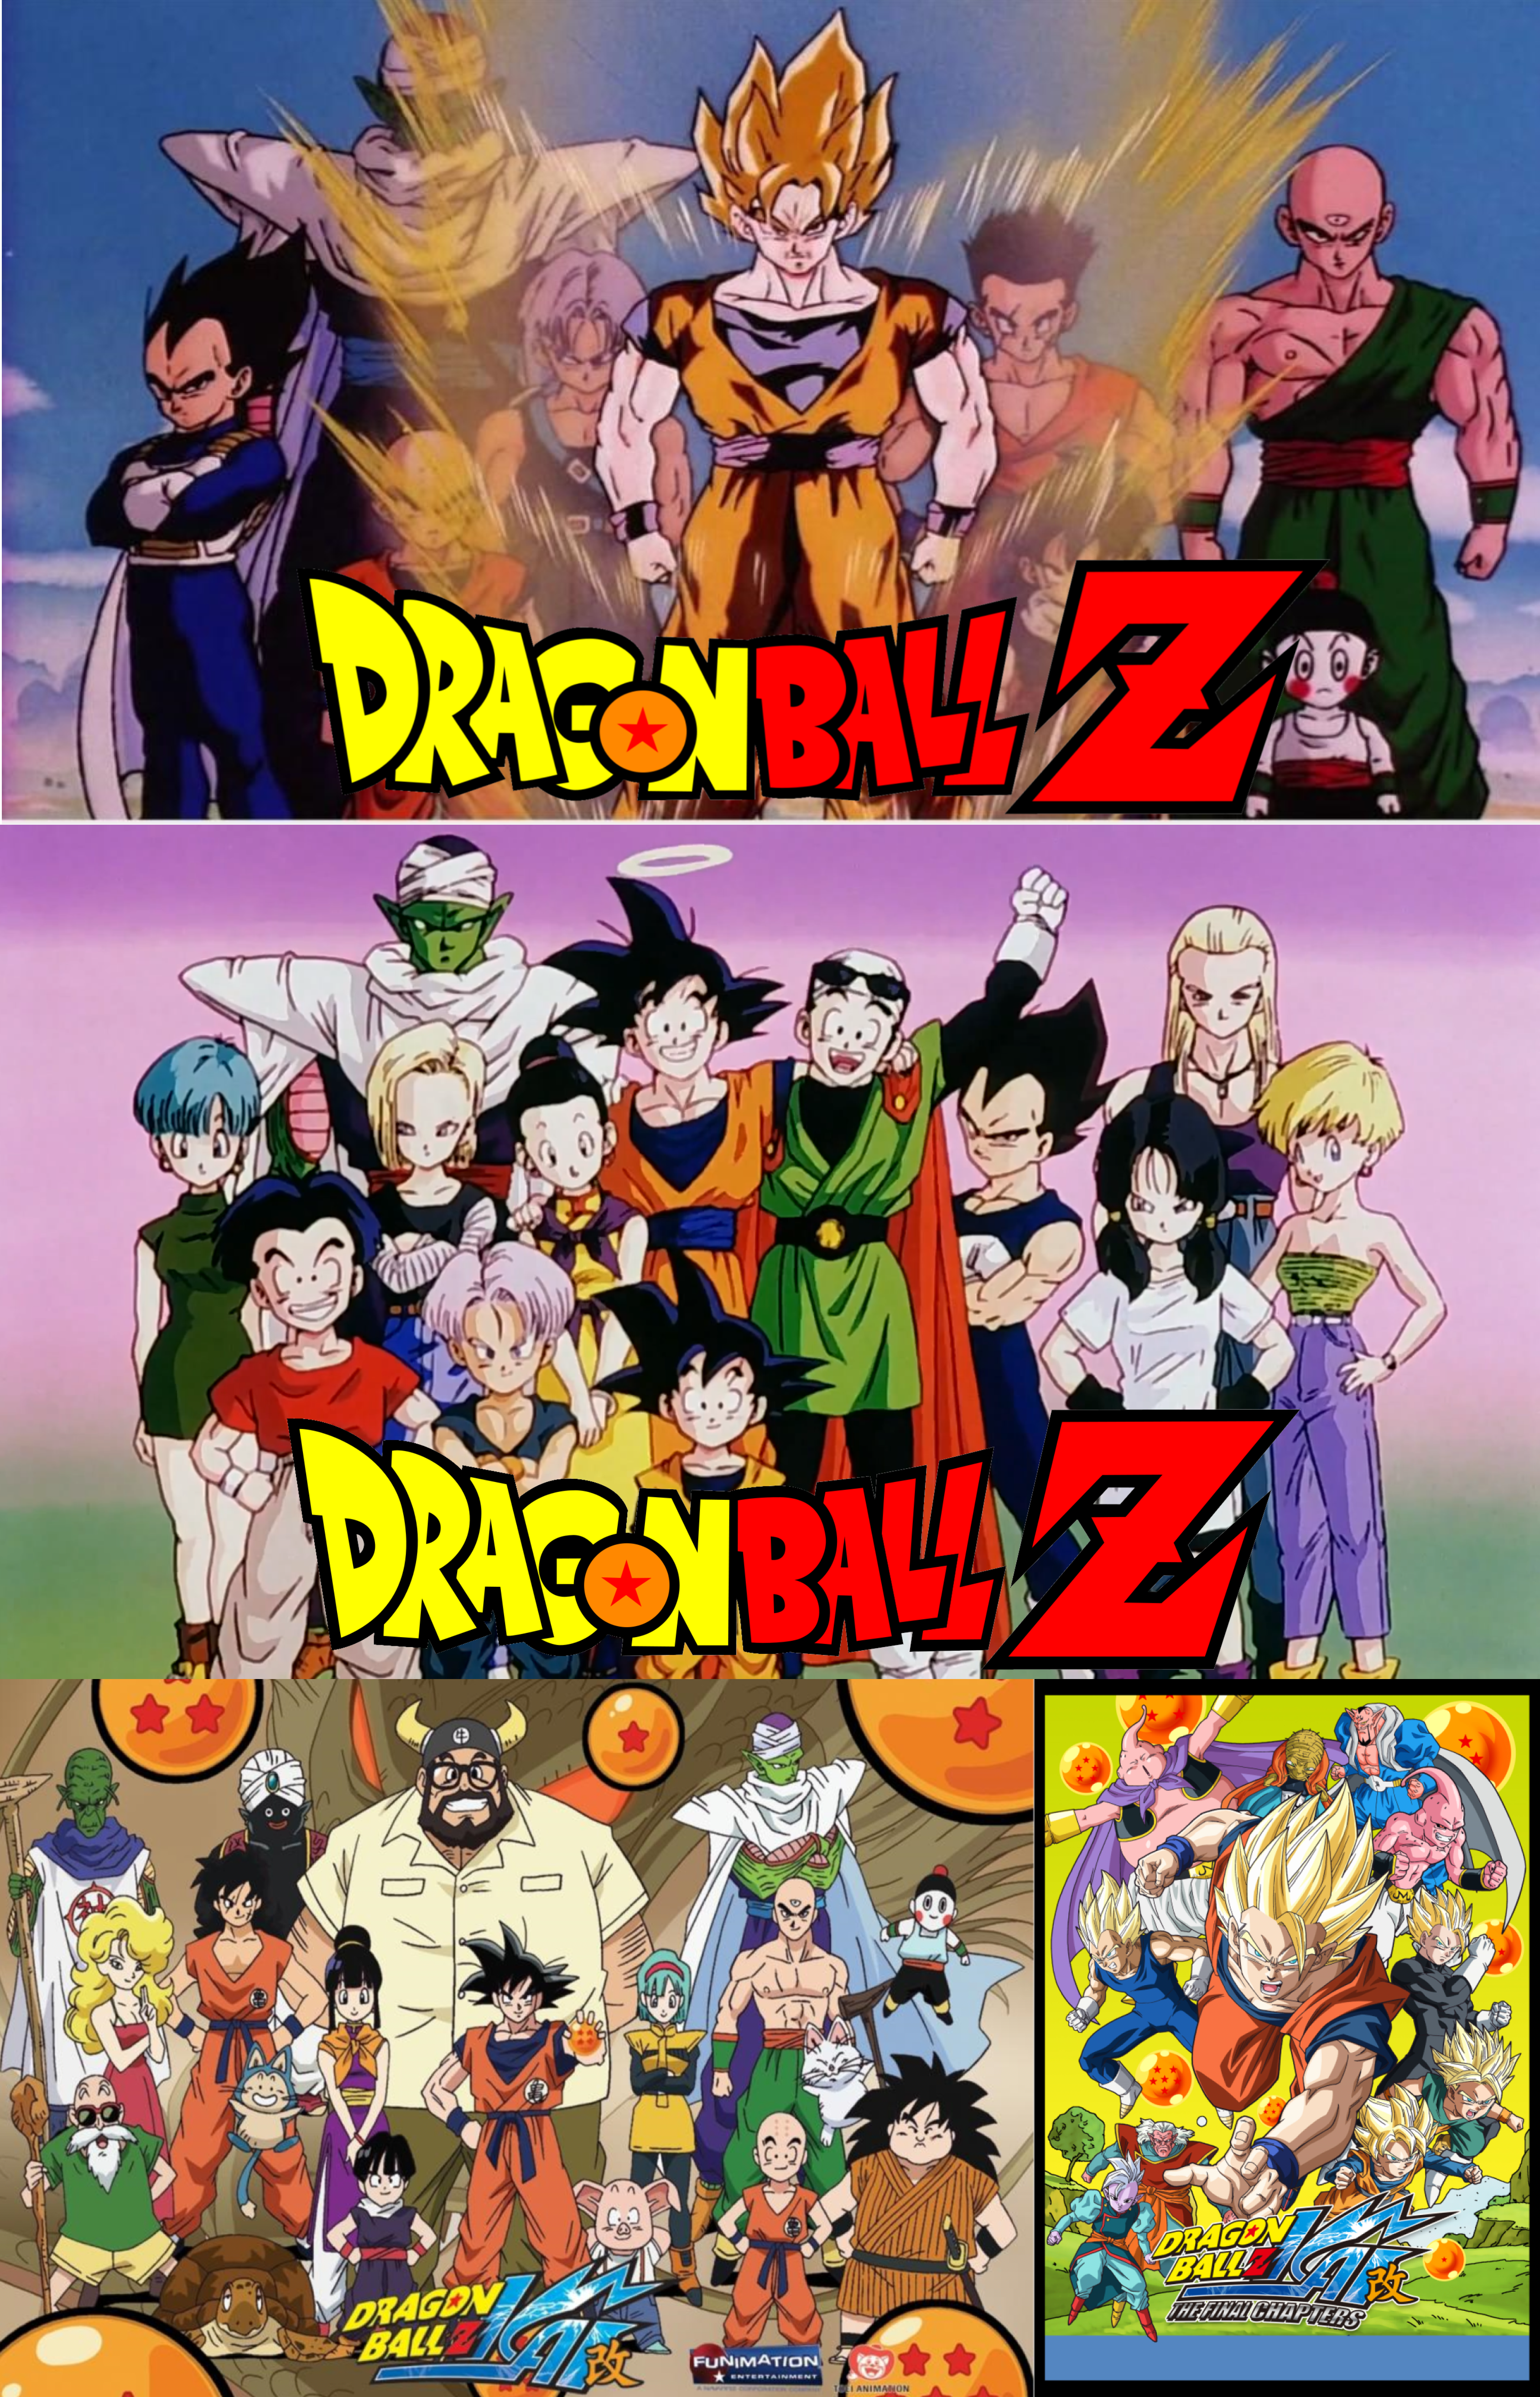 Dragon Ball Z Kai: The Final Chapters